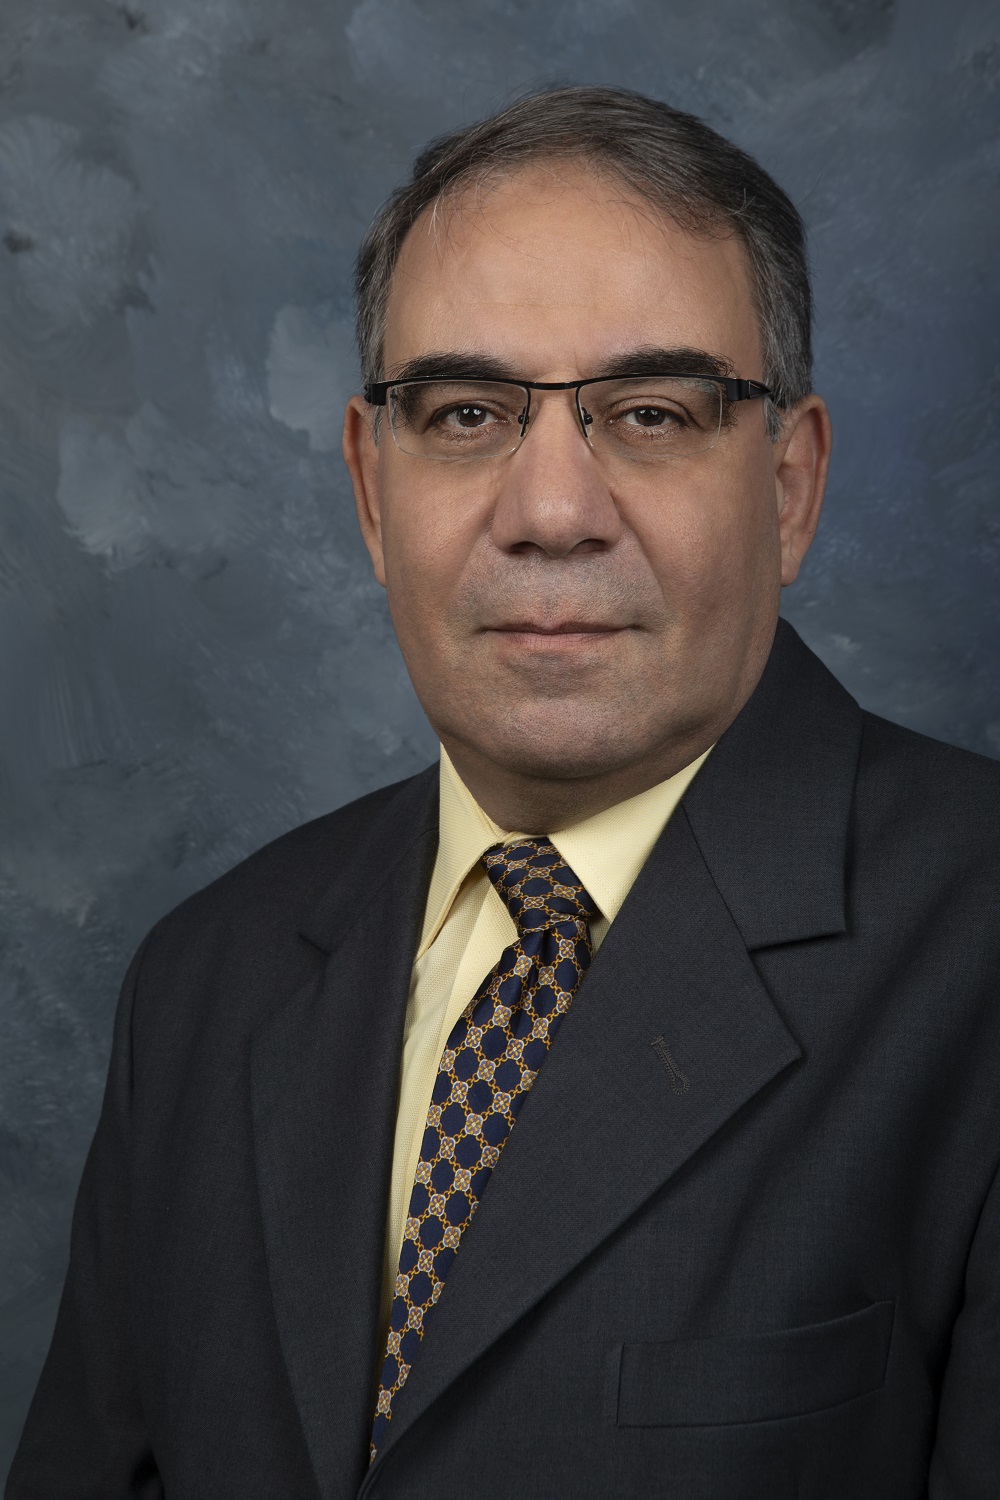 Dr. El-Sharkh